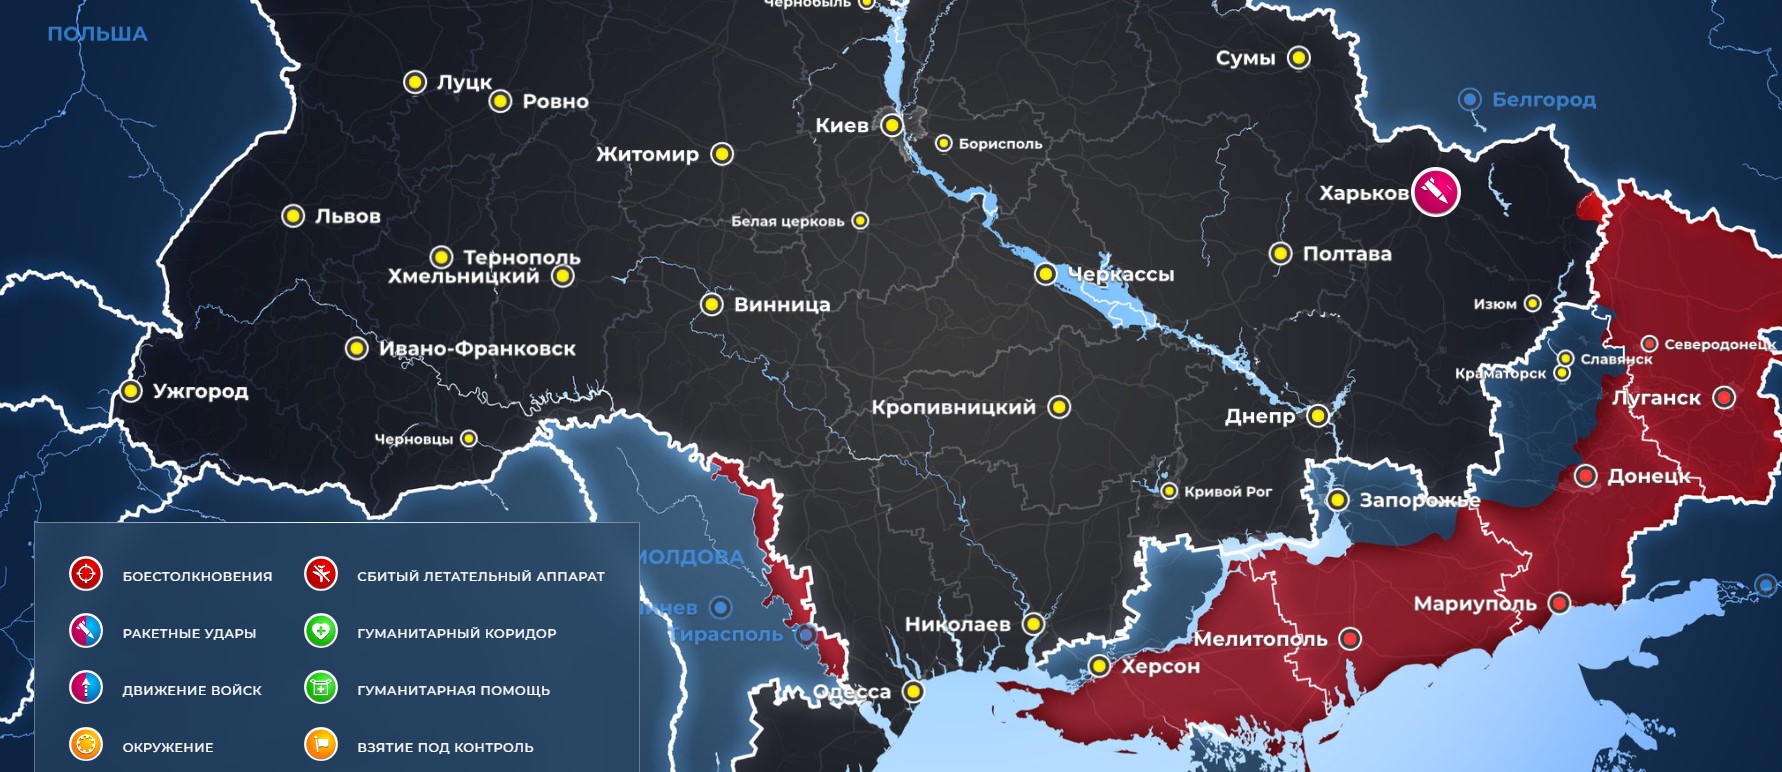 Карта боевых действий на Украине на сегодня, 13.02.2023